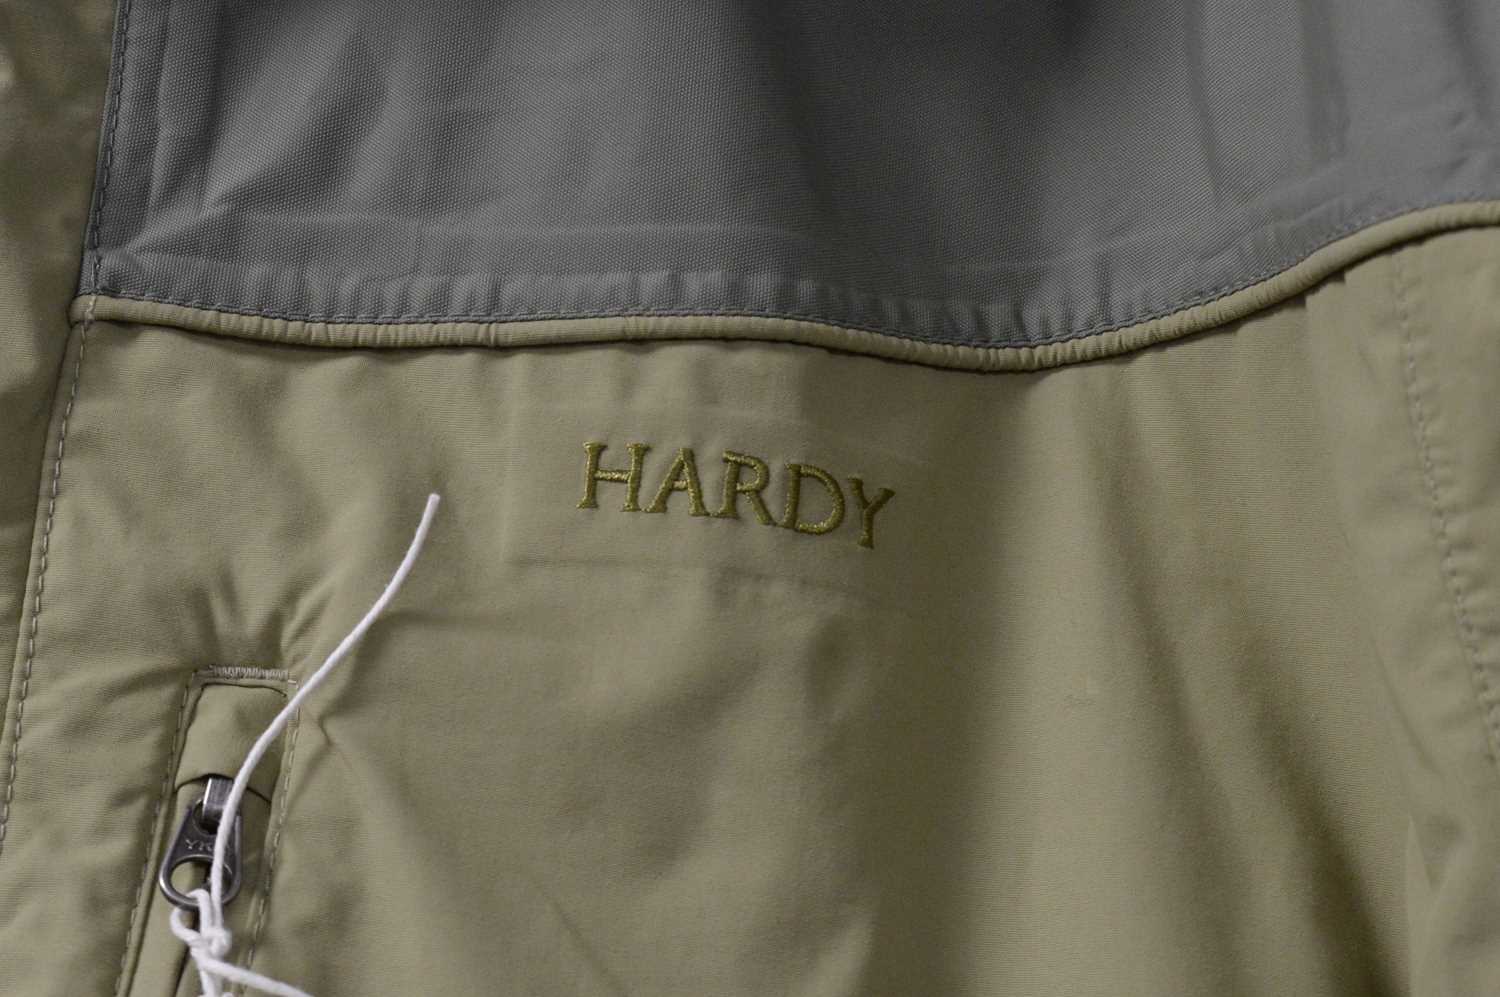 A Hardy jacket. - Image 2 of 3